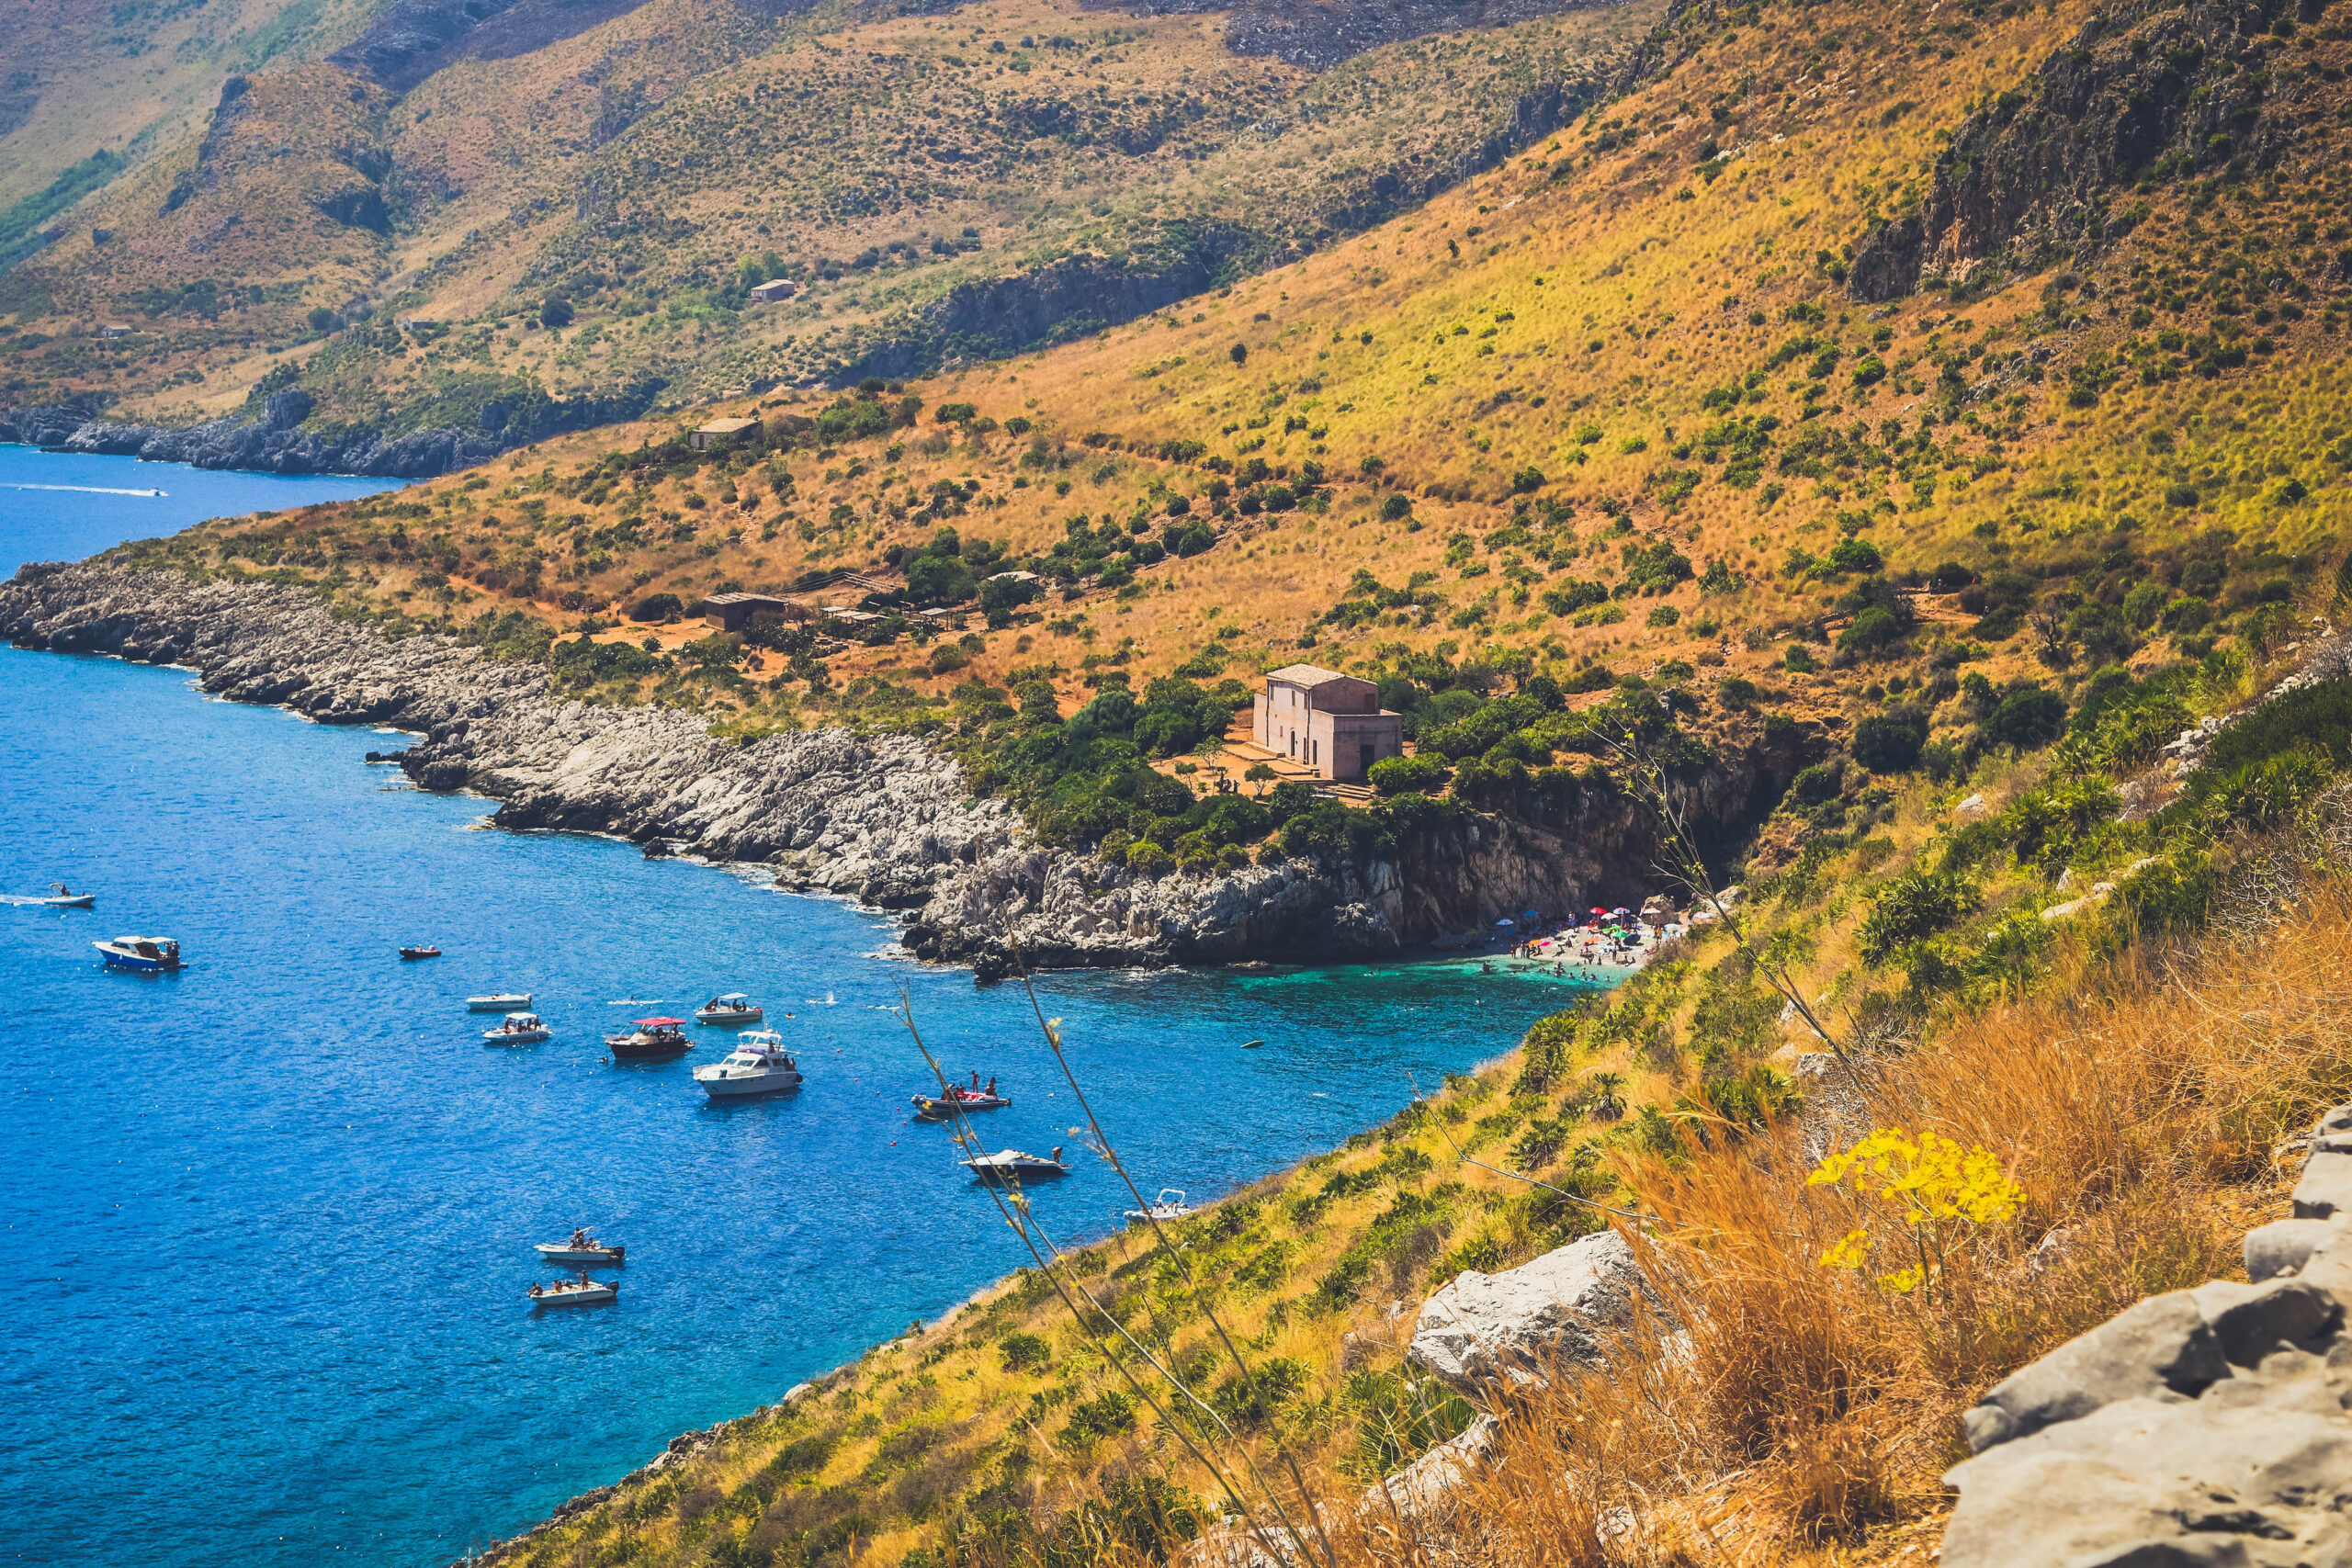 Travel Guide to Sicily_San vito lo capo_riserva dello zingaro_nature reserve_best beaches in italy_coves_where to go_boat_cala